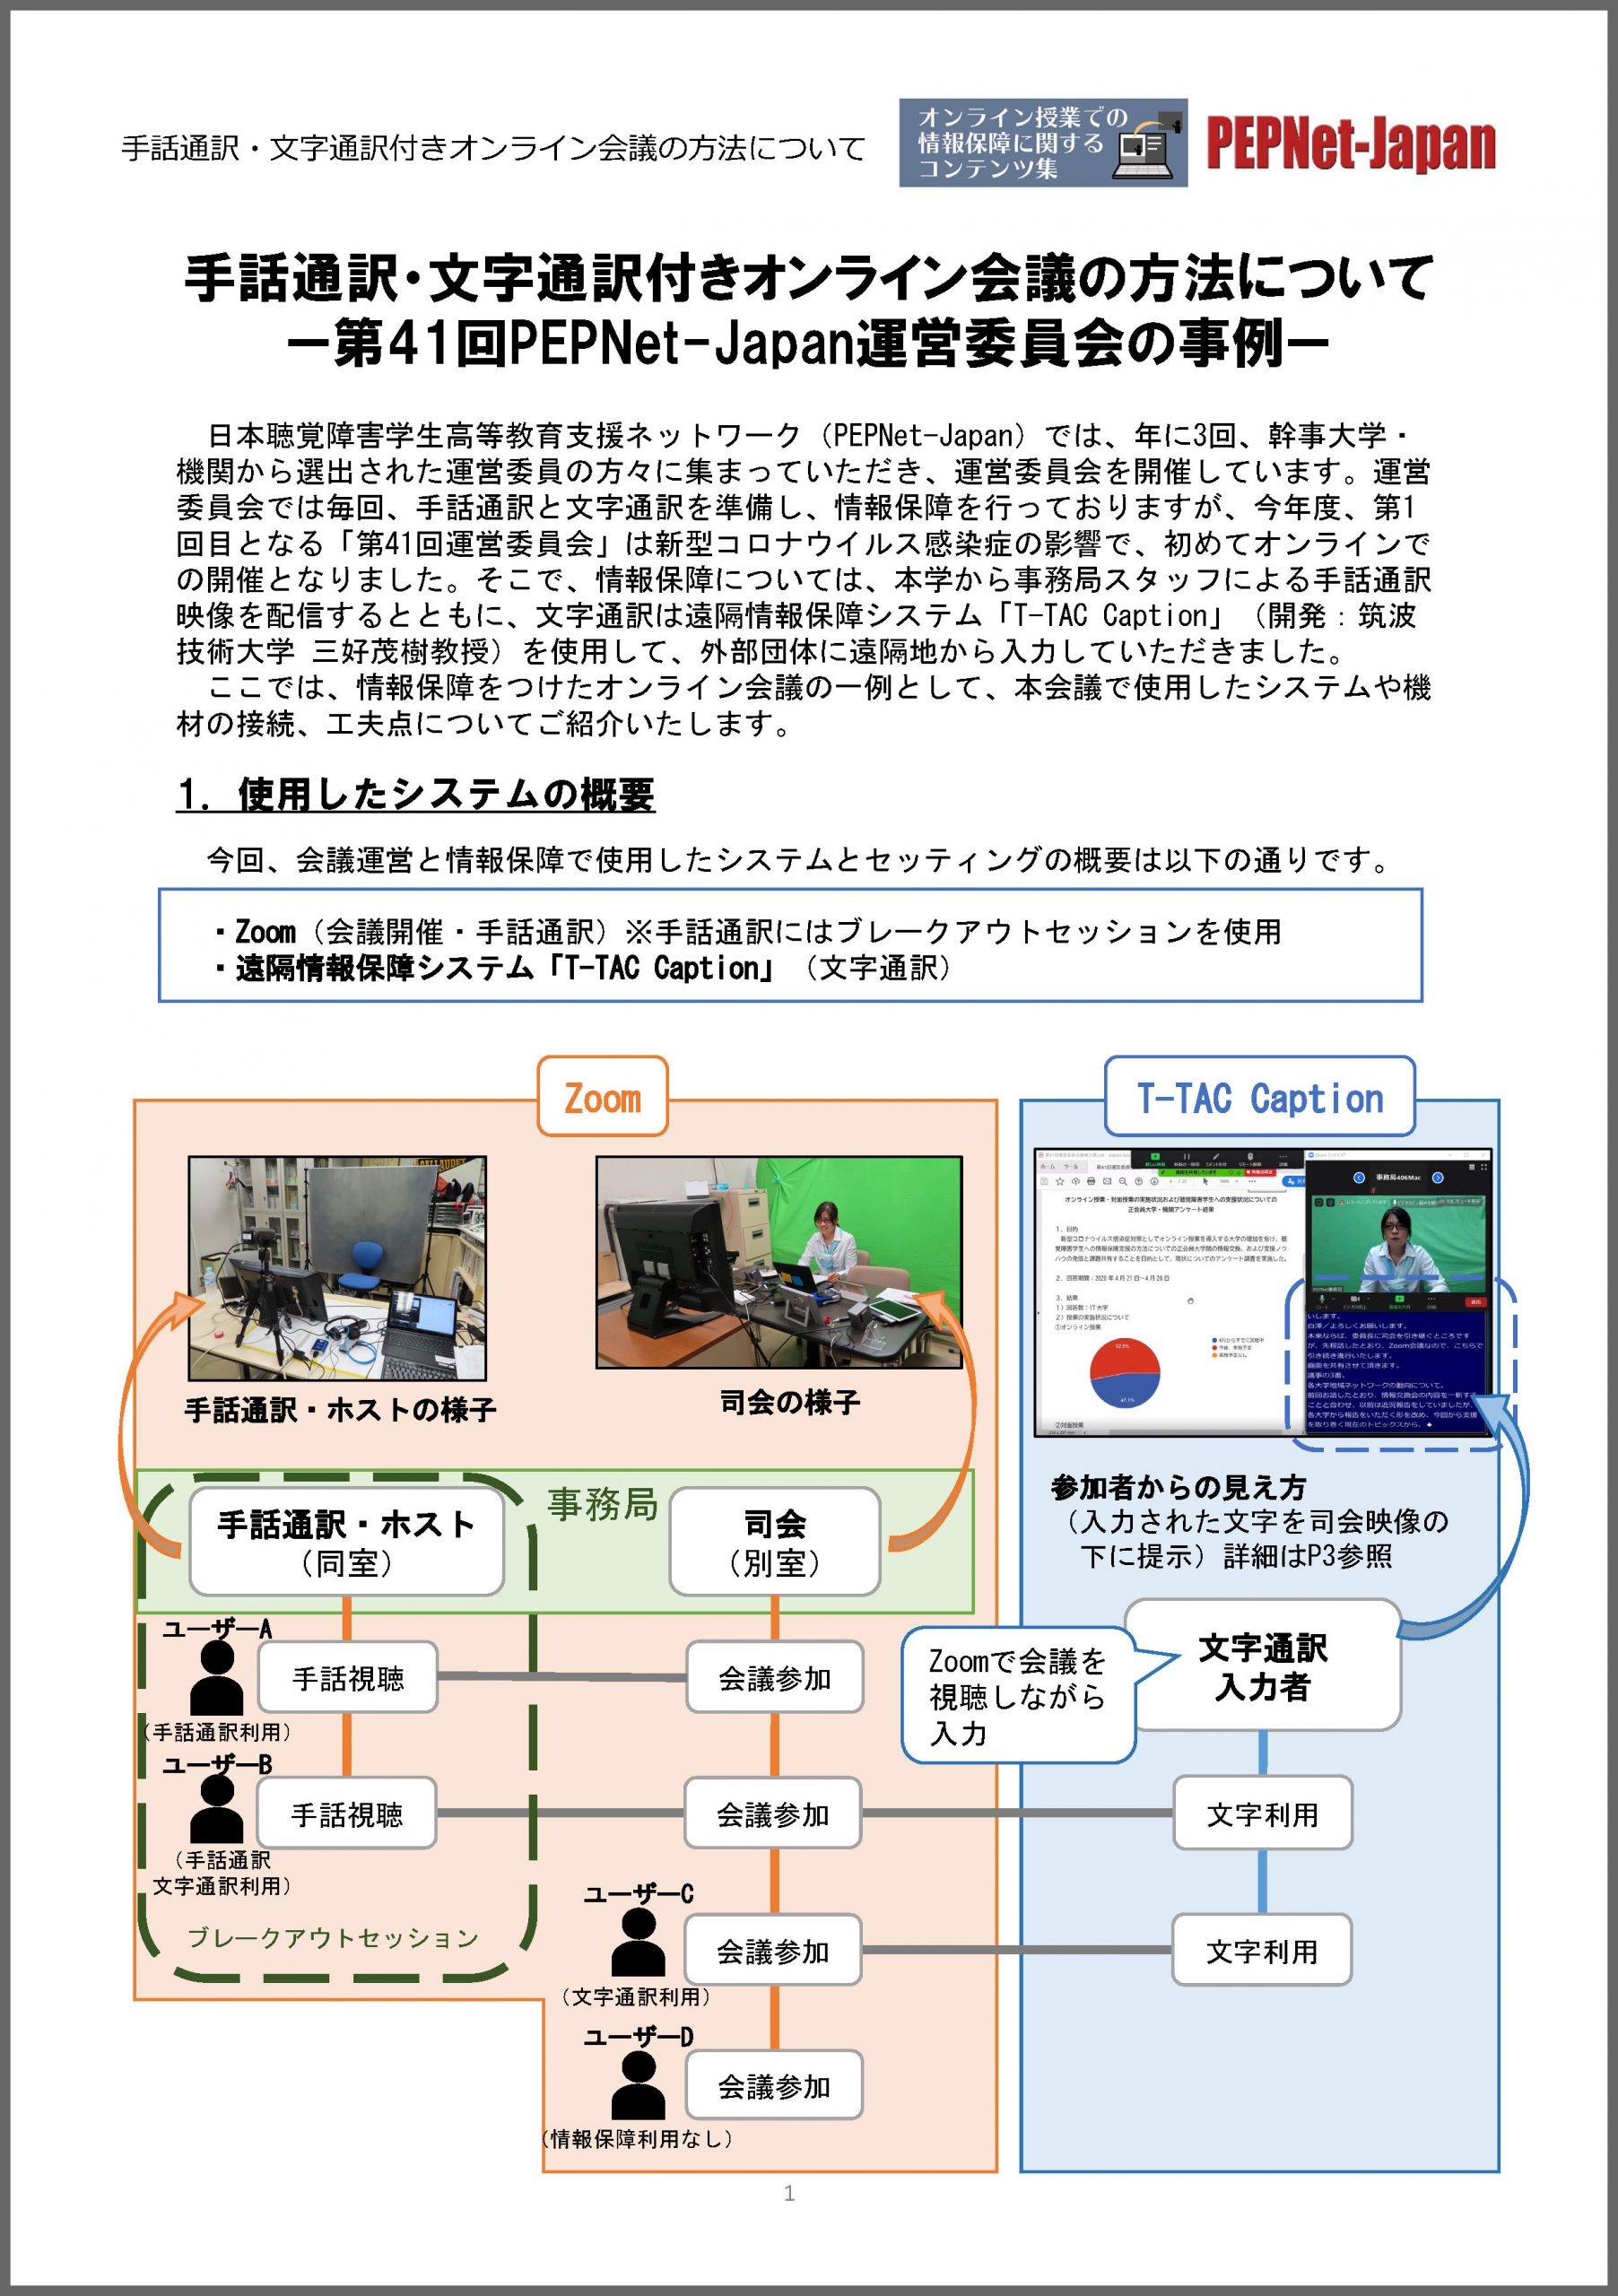 手話通訳・文字通訳付きオンライン会議の方法について―第41回PEPNet-Japan運営委員会の事例―